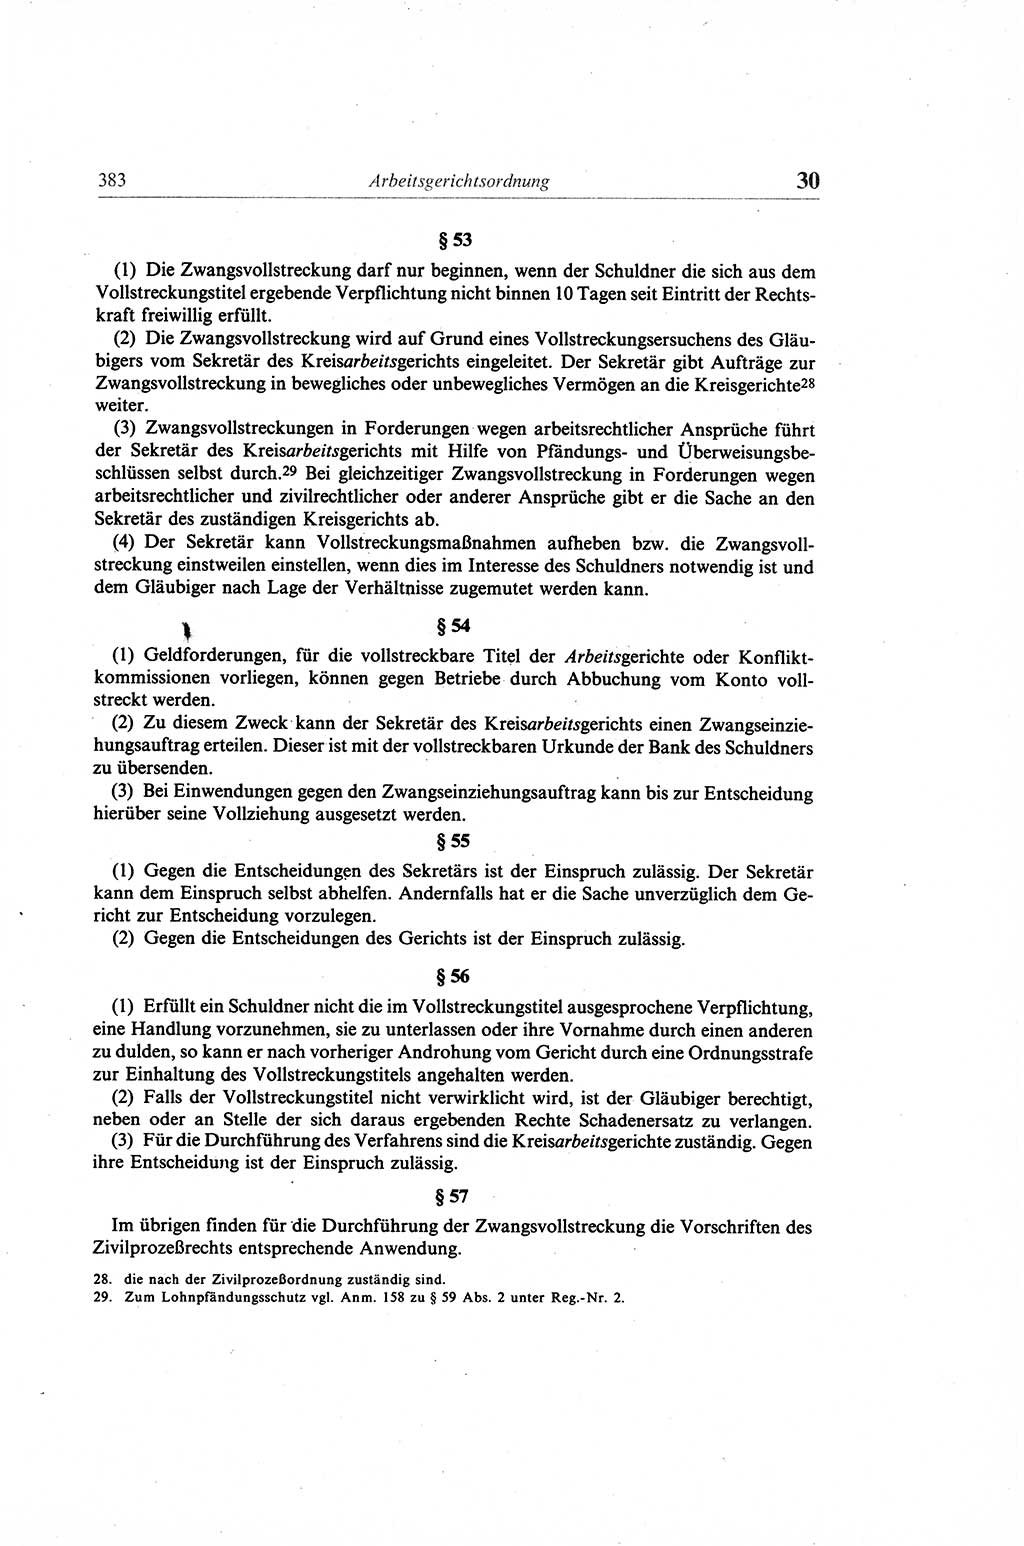 Gesetzbuch der Arbeit (GBA) und andere ausgewählte rechtliche Bestimmungen [Deutsche Demokratische Republik (DDR)] 1968, Seite 383 (GBA DDR 1968, S. 383)